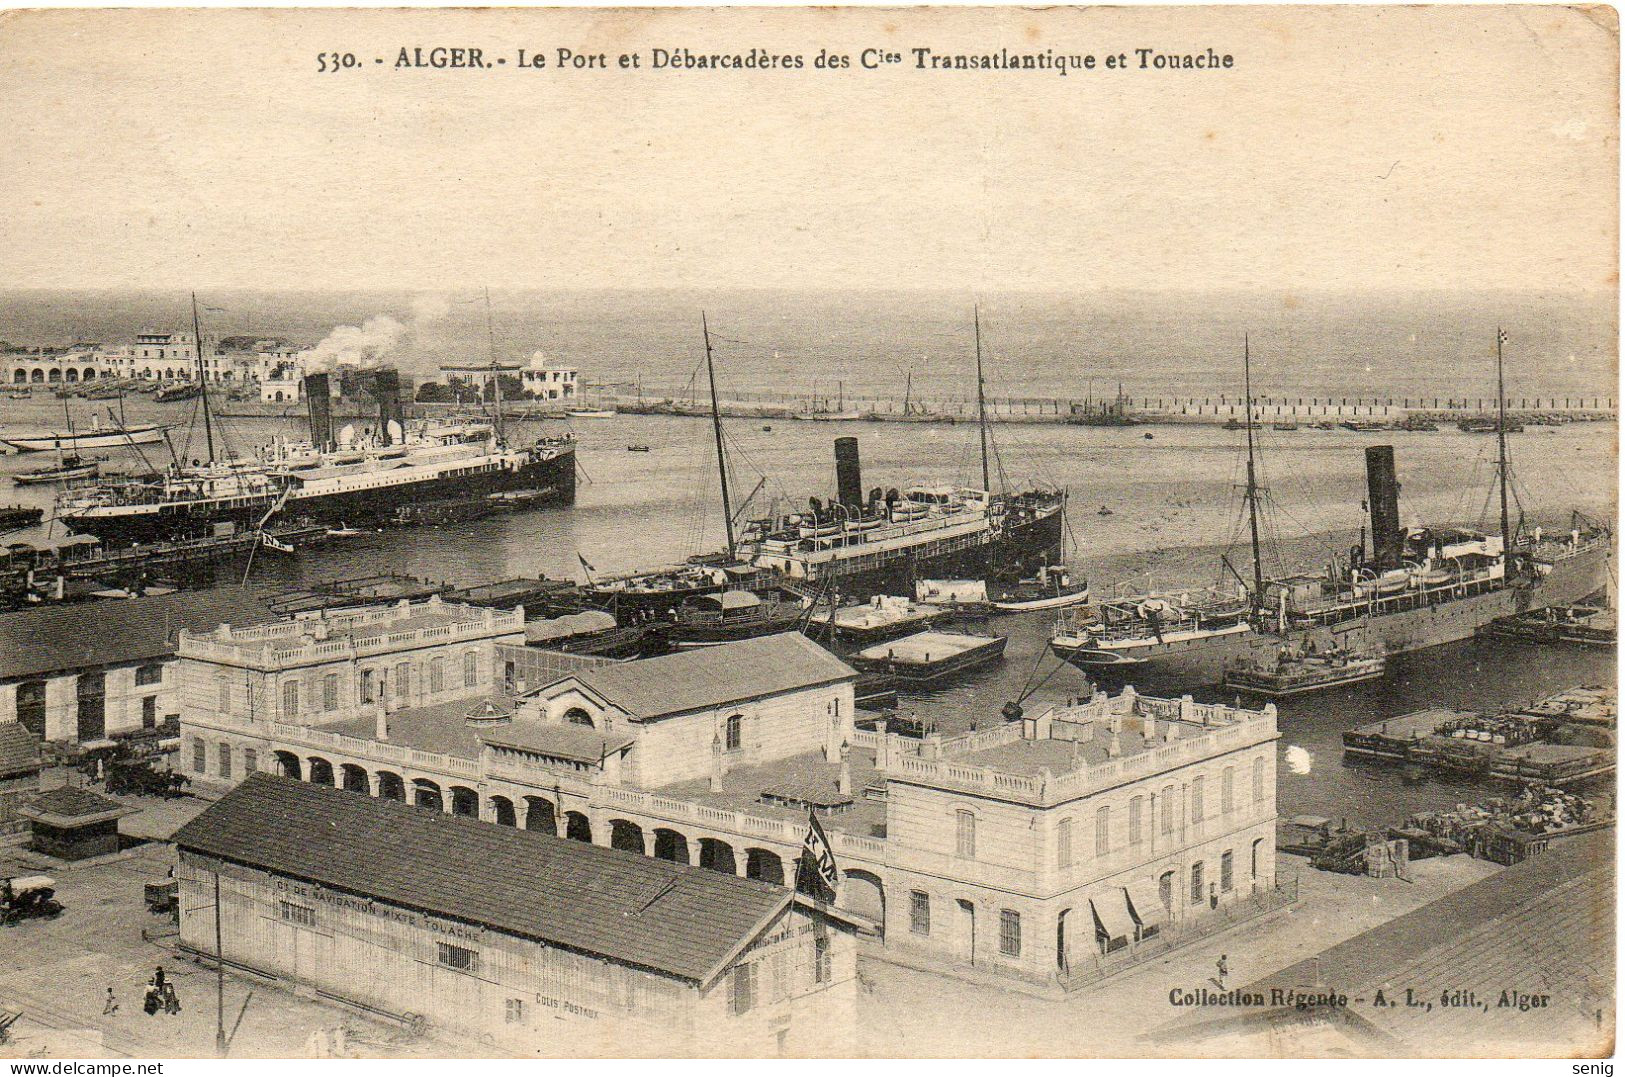 ALGERIE ALGER - 530 - Port Débarcadères Cies Transatlantique Touache - Collection Régence A. L. édit. Alger (Leroux) - Alger